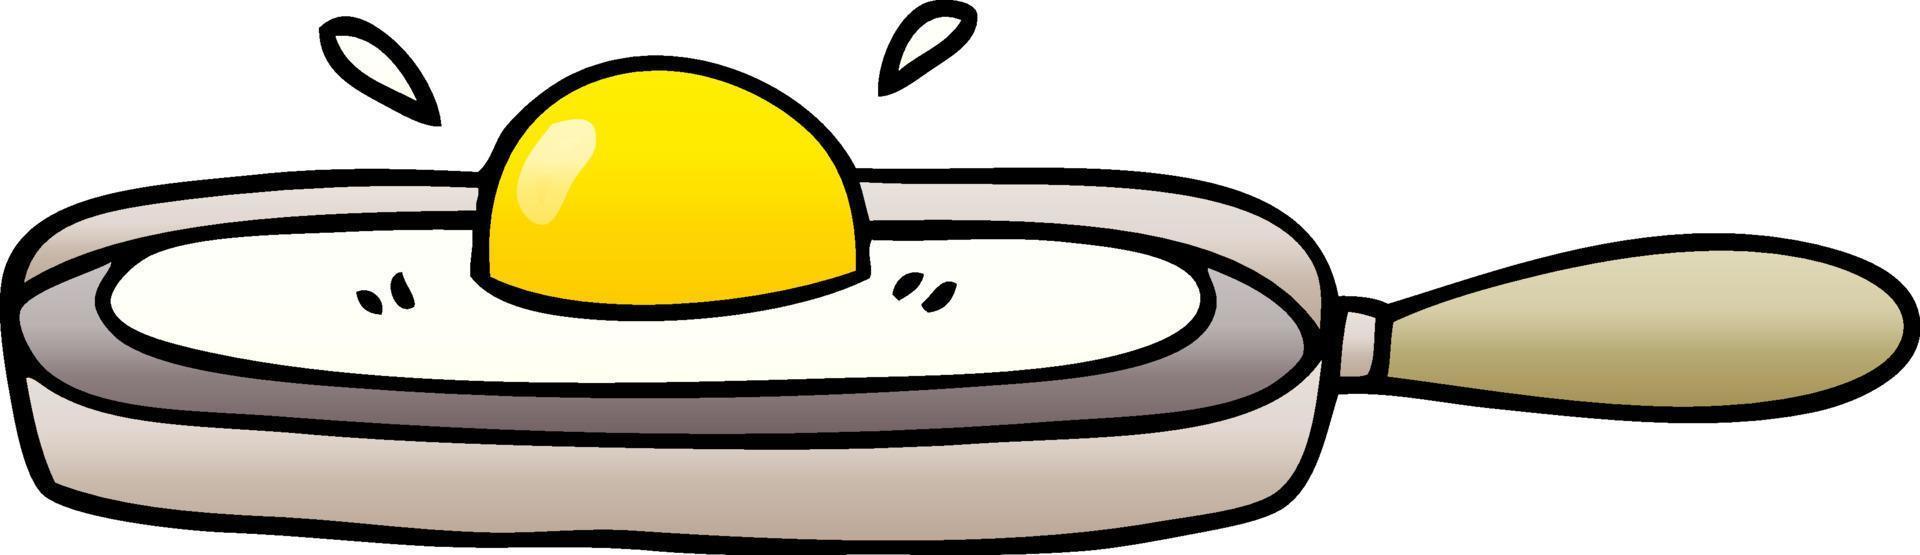 eigenzinnige gradiënt gearceerde cartoon gebakken ei in koekenpan vector